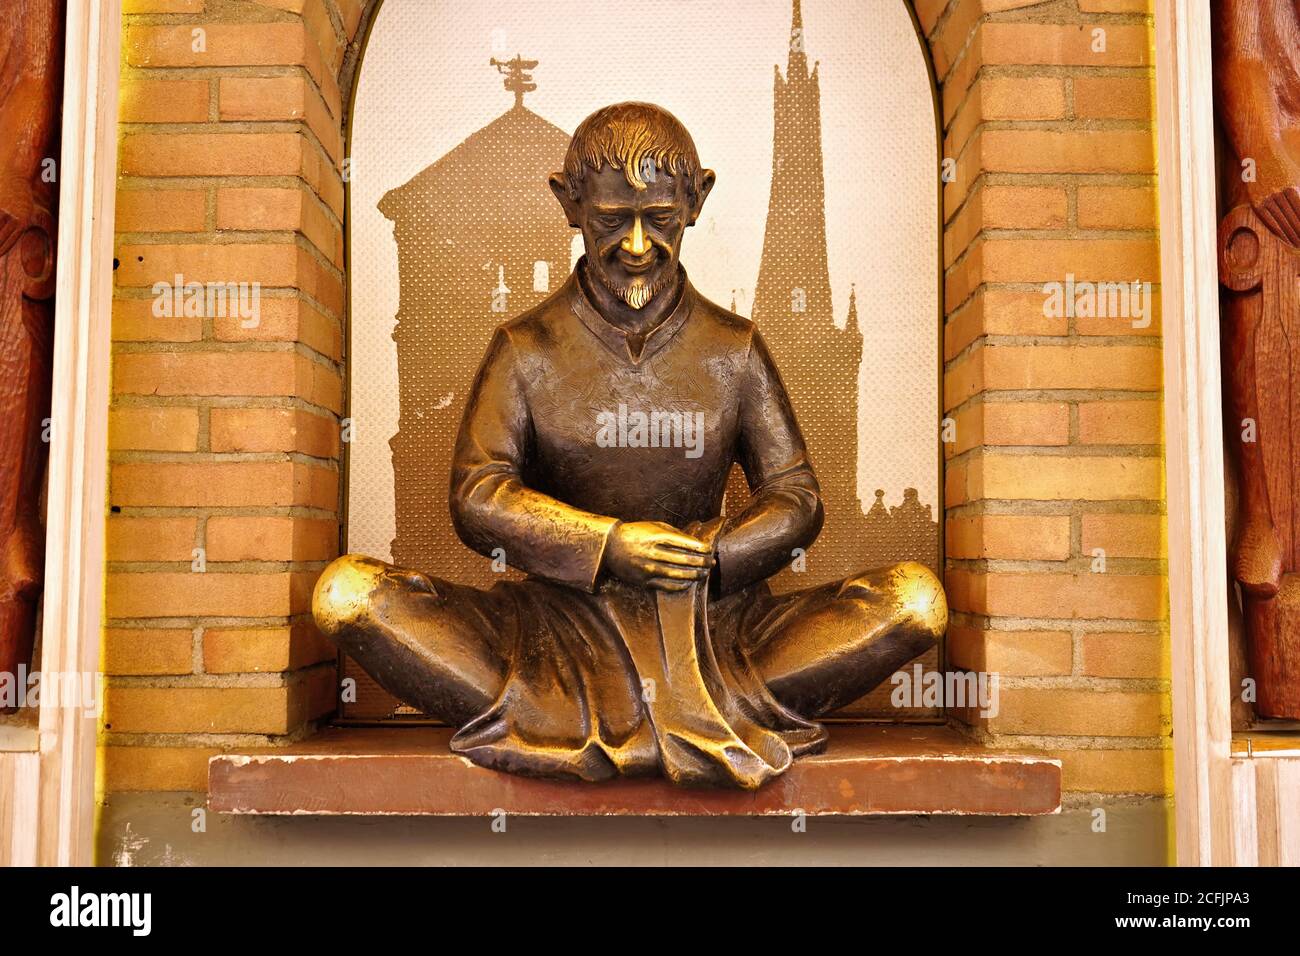 Sculpture Schneider Wibbel (tailleur Wibbel) dans la vieille ville de Düsseldorf. Il est un personnage nouveau basé sur une personne réelle. Banque D'Images